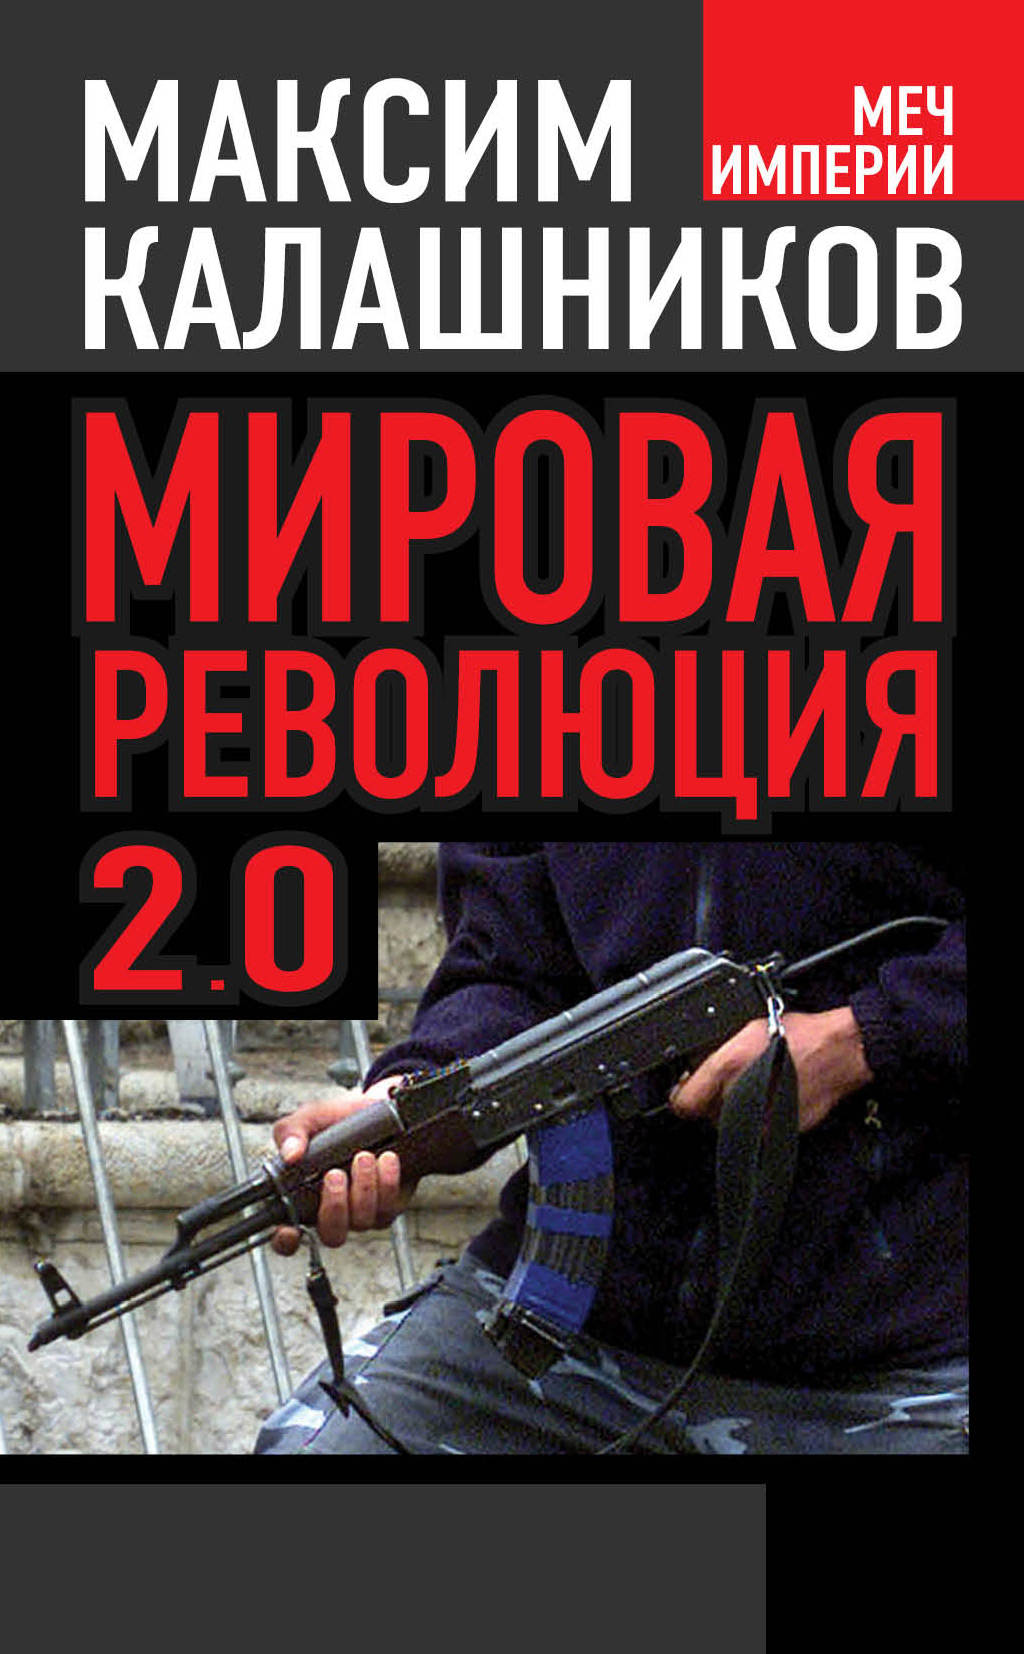 Книга Мировая революция-2.0 из серии , созданная Максим Калашников, может относится к жанру Политика, политология, Публицистика: прочее. Стоимость электронной книги Мировая революция-2.0 с идентификатором 6667591 составляет 99.90 руб.